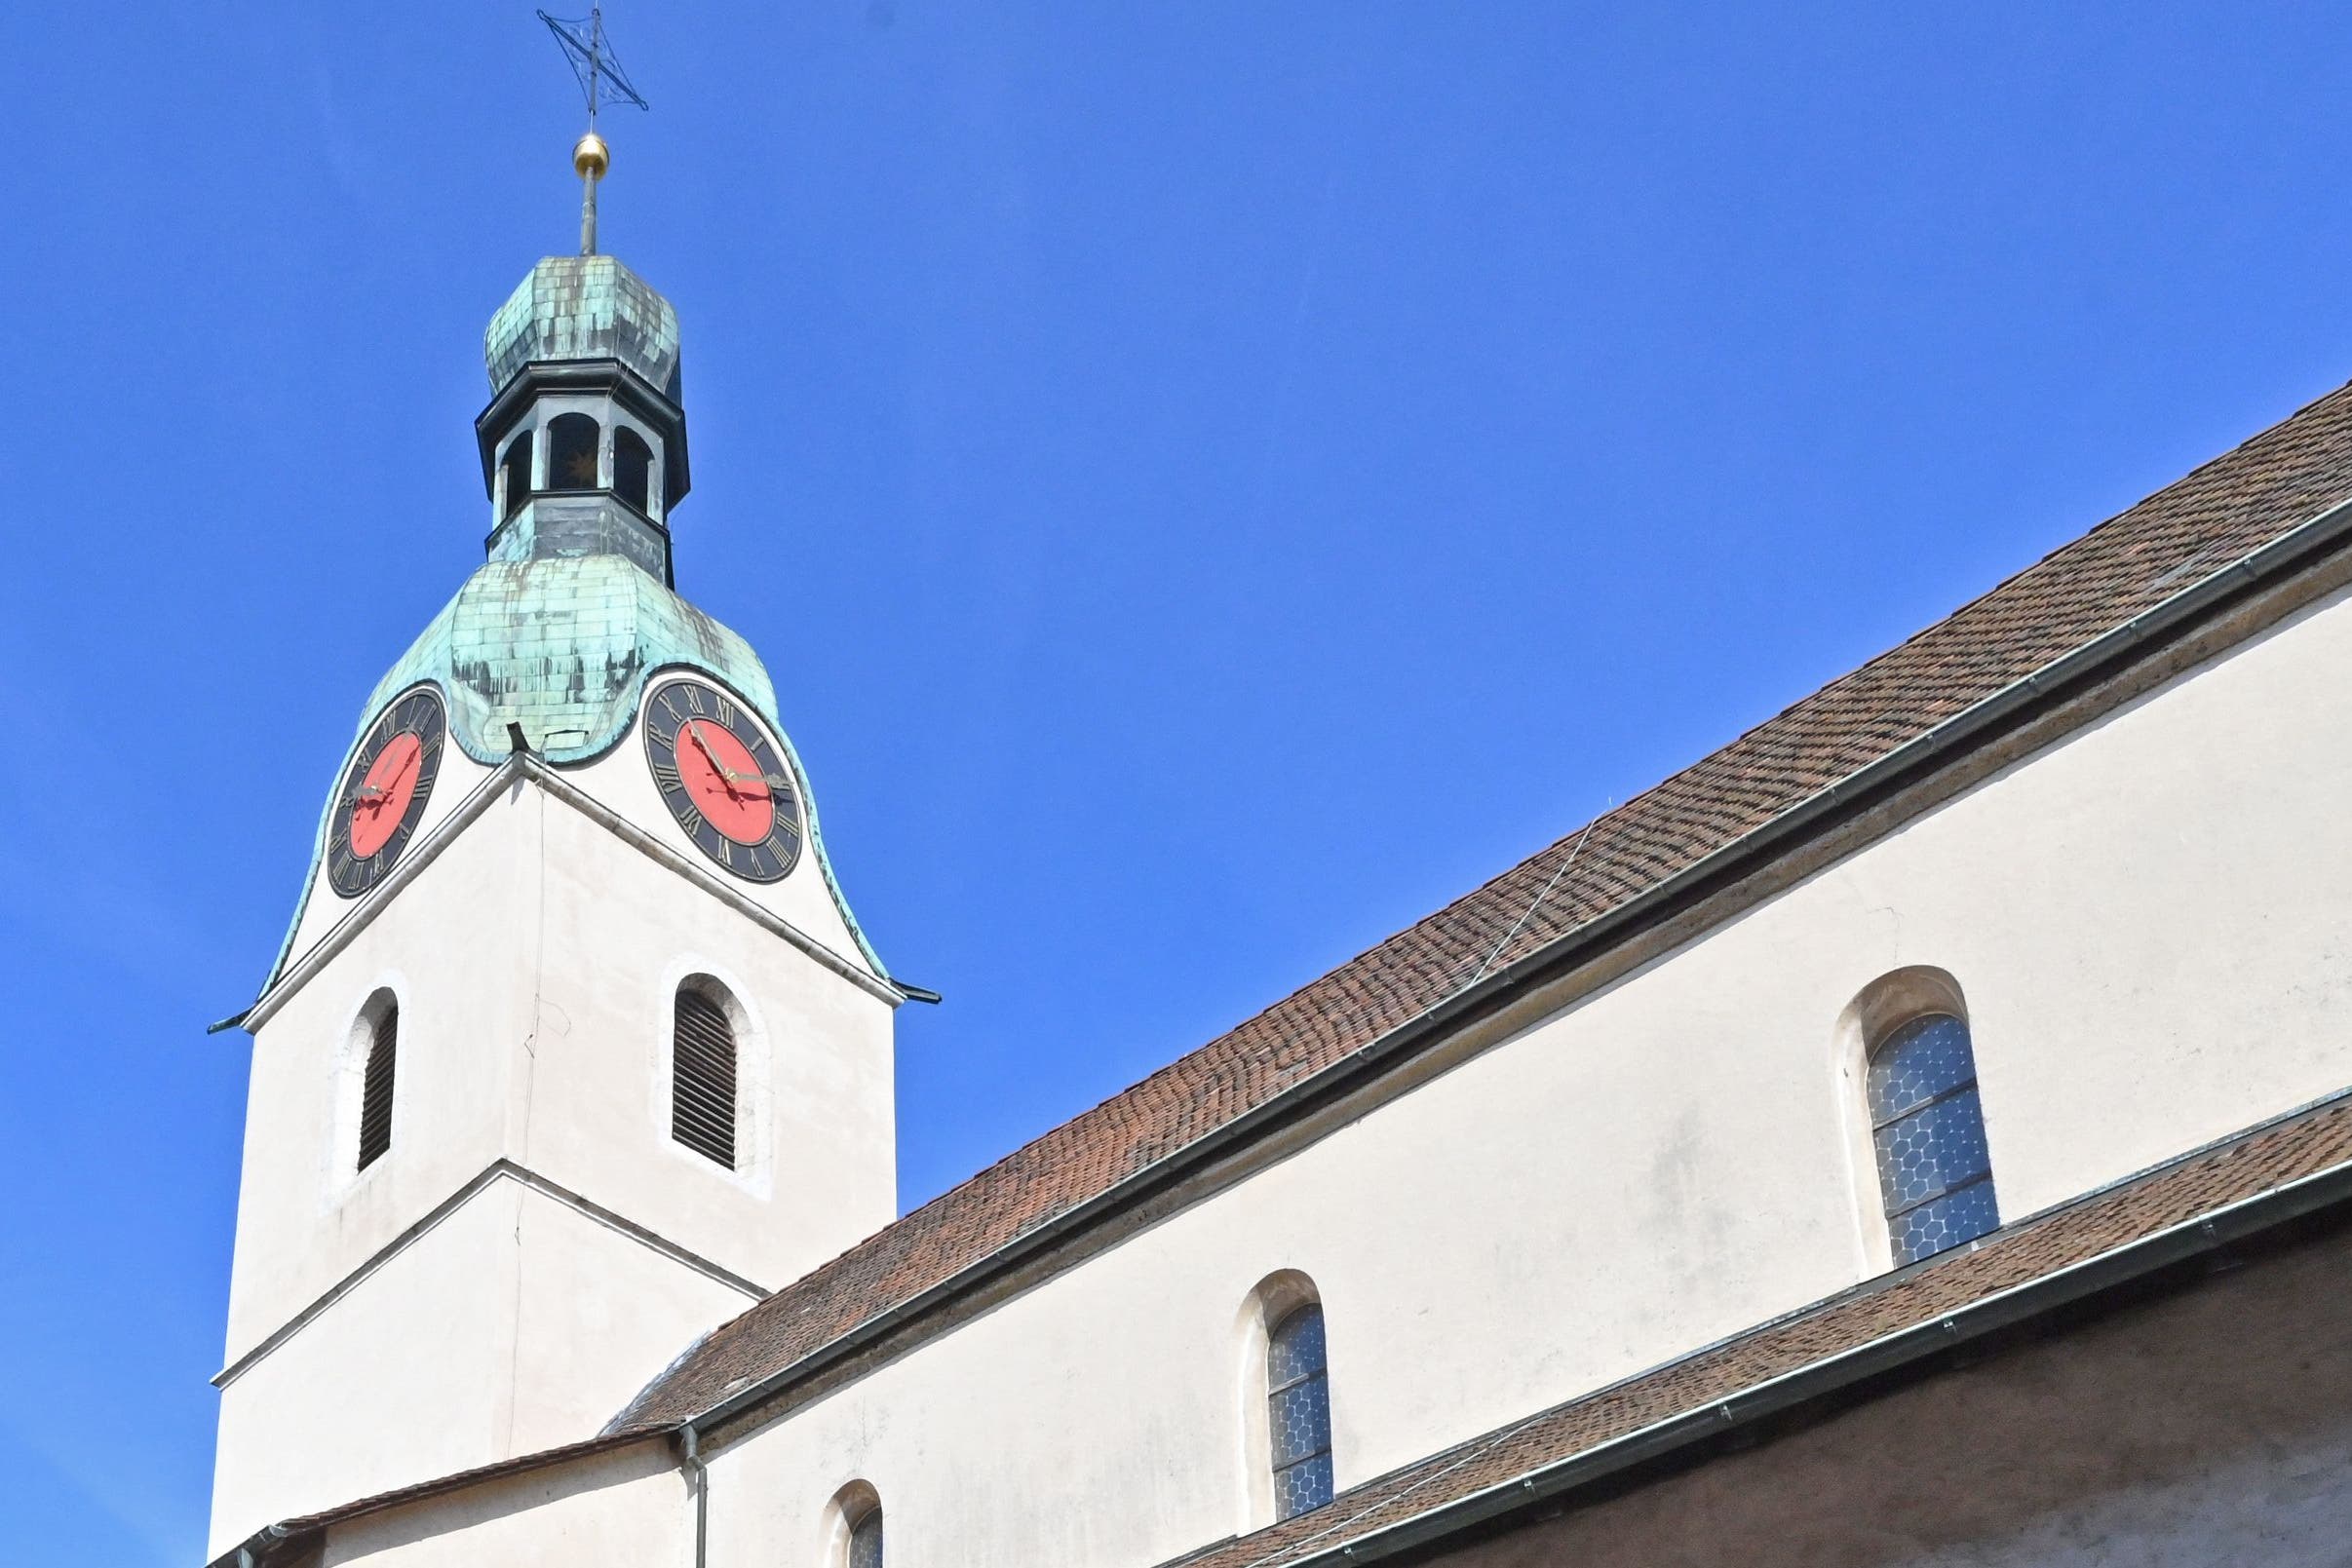 Gute Aussicht: Oben im Turm der Stiftskirche Schönenwerd sind sechs Nistkästen angebracht.